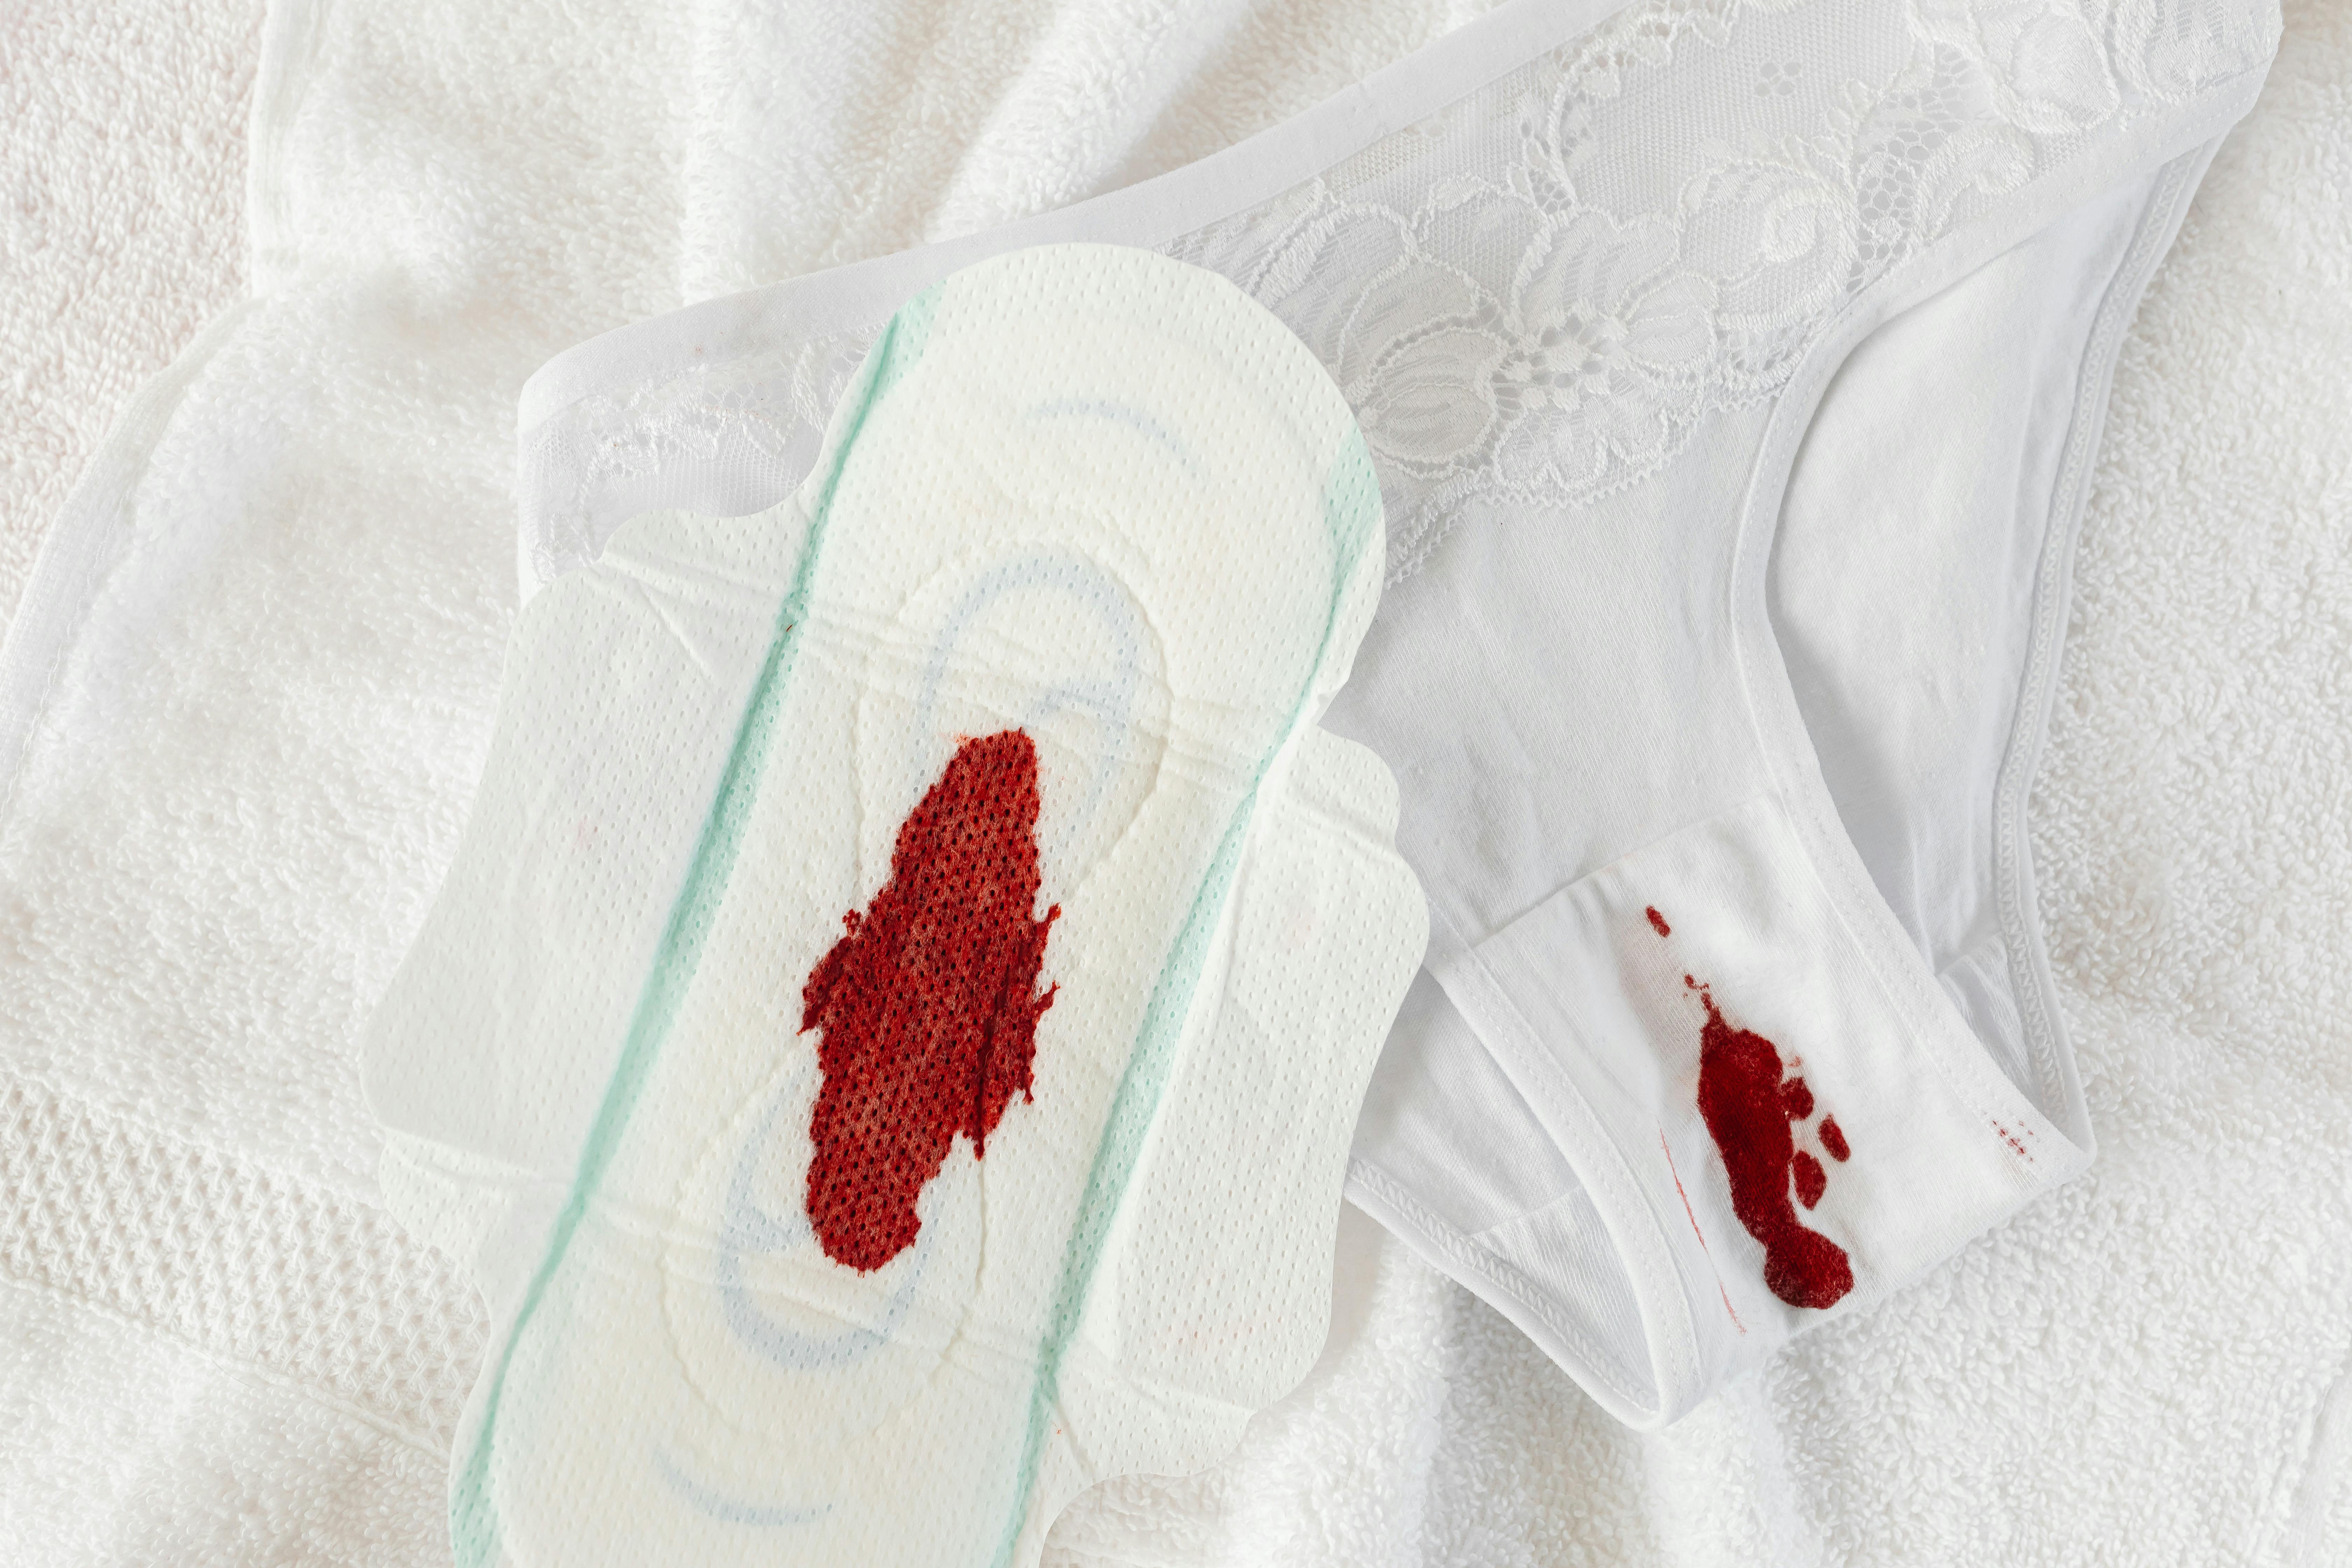 


<h3>Lavage et entretien initial</h3>
<p>Avant la première utilisation des culottes menstruelles, un soin particulier doit être apporté à leur <b>lavage</b> et à leur entretien. Il est essentiel de suivre les instructions spécifiques fournies par le fabricant pour assurer la longévité et l’efficacité du produit. Un lavage adéquat permet de préserver les matériaux et d’assurer une hygiène <i>optimale</i>, ce qui est crucial pour des produits intimement liés à la santé feminine.</p>
<p>L’<b>entretien</b> initial est également une étape cruciale dans la préparation des culottes menstruelles pour leur stockage. En assurant un séchage complet et un stockage dans un endroit sec et frais, vous préparez vos culottes à être utilisées à tout moment, tout en préservant leur <i>qualité</i> et leur capacité à fournir une protection <b>efficace</b> et confortable.</p>
<h3>Comment les mettre correctement</h3>
<p>Le placement correct des culottes menstruelles est essentiel pour maximiser leur efficacité et votre confort. Assurez-vous qu’elles soient bien ajustées contre votre corps sans être trop serrées. Le tissu doit être en contact direct avec la peau pour permettre une absorption <b>optimale</b>. Un ajustement précis aide également à prévenir les fuites et offre une expérience confortable et <i>sûre</i> pendant toute la durée de votre cycle.</p>
<p>Le <b>stockage</b> des culottes menstruelles, avant et après utilisation, doit être réalisé avec soin pour maintenir leur forme et leur fonctionnalité. Gardez-les à plat et évitez de les entasser ou de les froisser pour préserver la structure du tissu et les propriétés absorbantes des matériaux. Un stockage soigné contribue à un <i>ajustement</i> et une utilisation idéals, assurant ainsi une performance constante et fiable à chaque utilisation.</p>
<p> » /><br />
La préparation adéquate de vos culottes menstruelles avant leur utilisation est une étape cruciale qui garantit leur efficacité et durabilité. Commencer par laver délicatement la culotte menstruelle; ce processus aide à améliorer l’absorbance du tissu et à assurer qu’il soit exempt de toute substance indésirable. L’utilisation d’un détergent <b><a href=